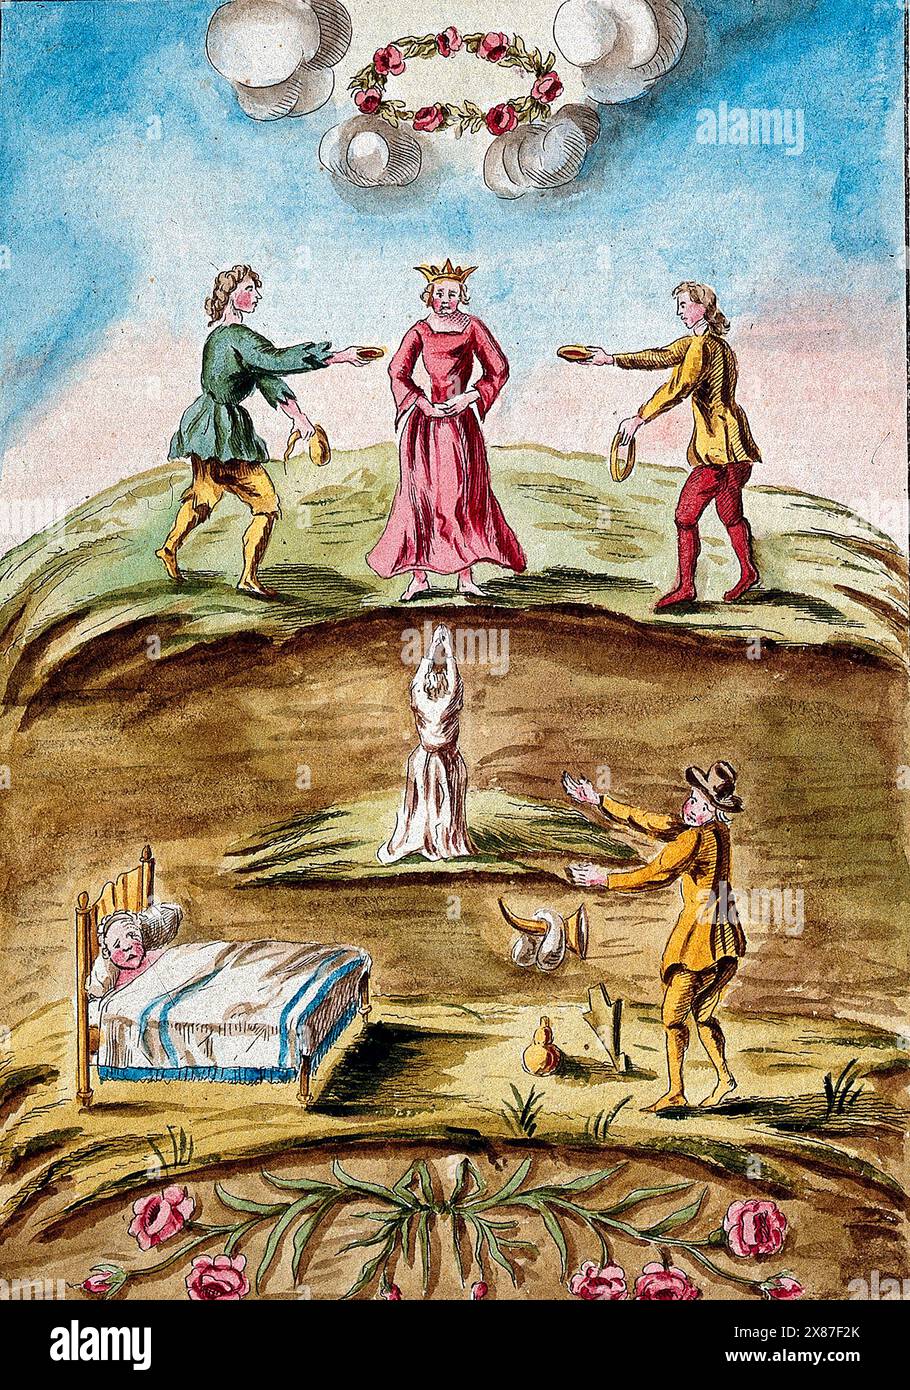 Eine Königin in Rot wird auf einem Hügel mit Blutschüsseln überreicht; unten streicht ein Mann in einem weißen Gewand in den Himmel; während ein anderer Mann neben einem alchemistischen Apparat steht und einem Mann gegenübersteht, der krank im Bett liegt; dies stellt eine Stufe im Prozess der Alchemie dar. Farbige Radierung, ca. 18. Jahrhundert. Stockfoto